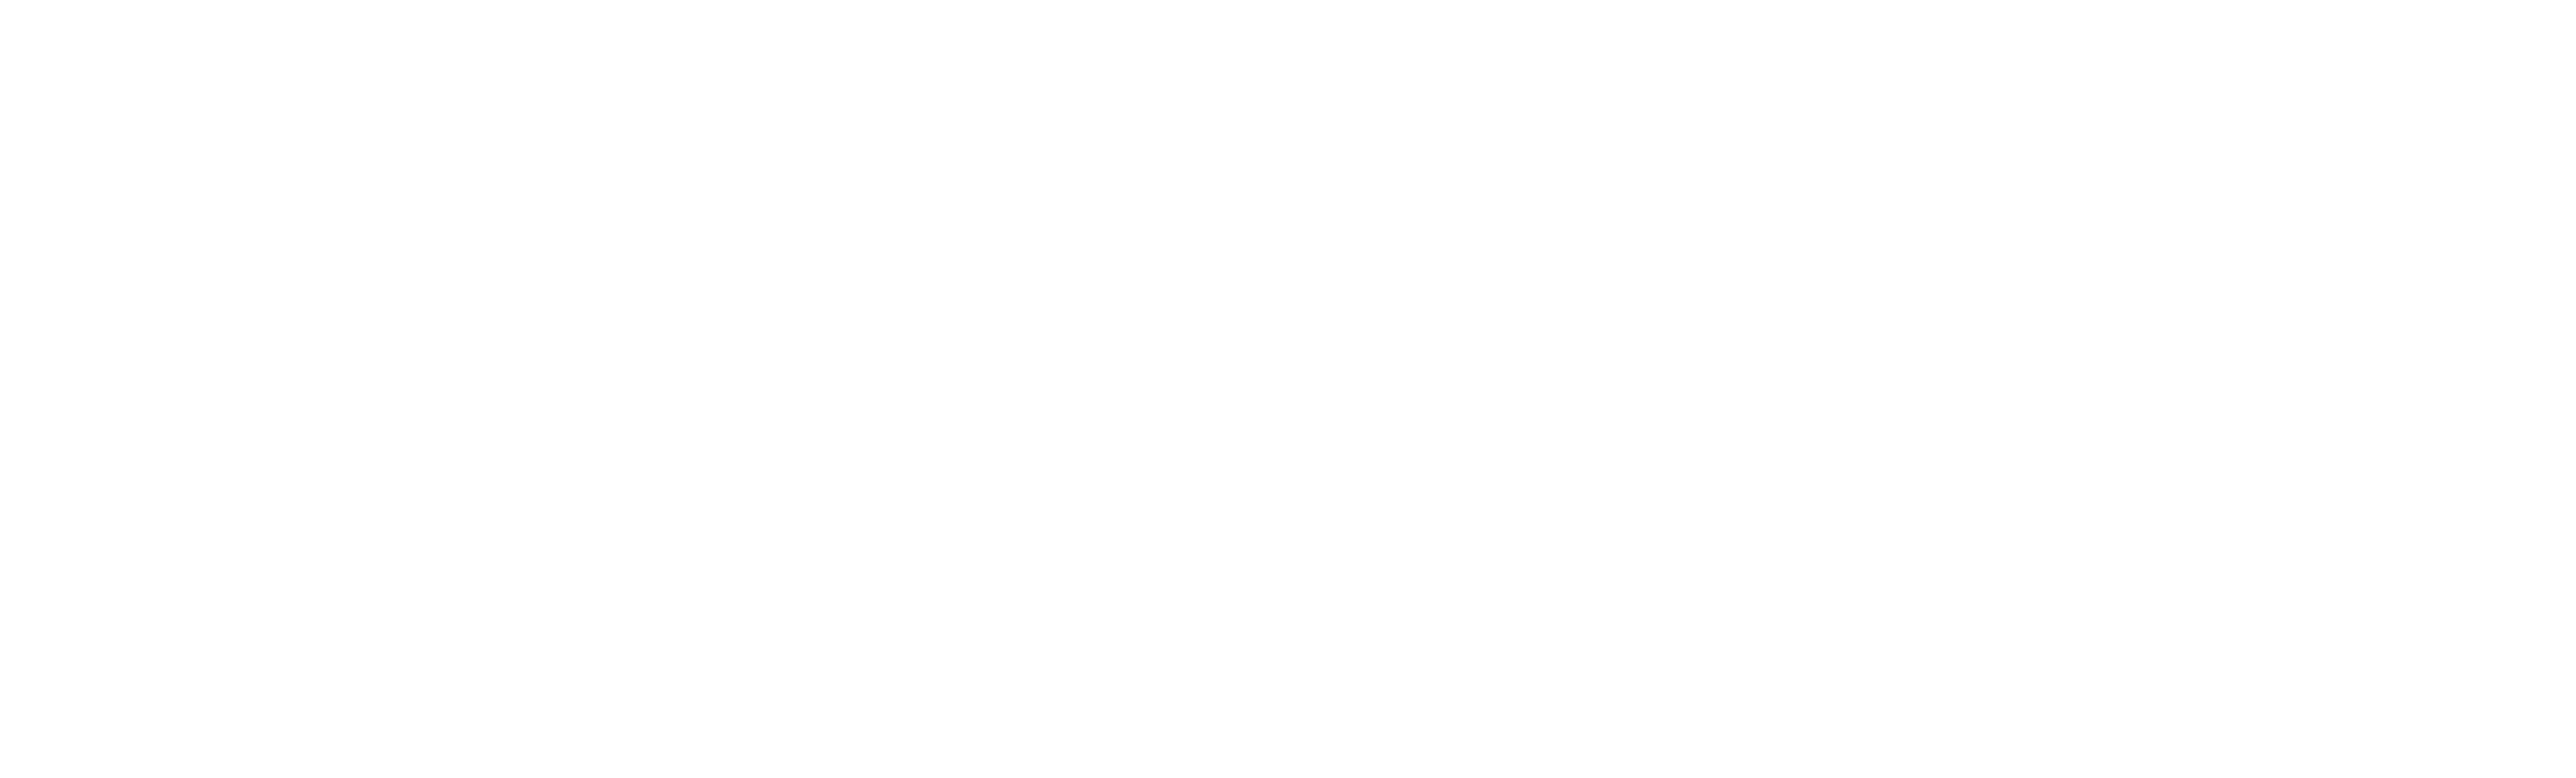 Wilkes University logo - horizontal with white text